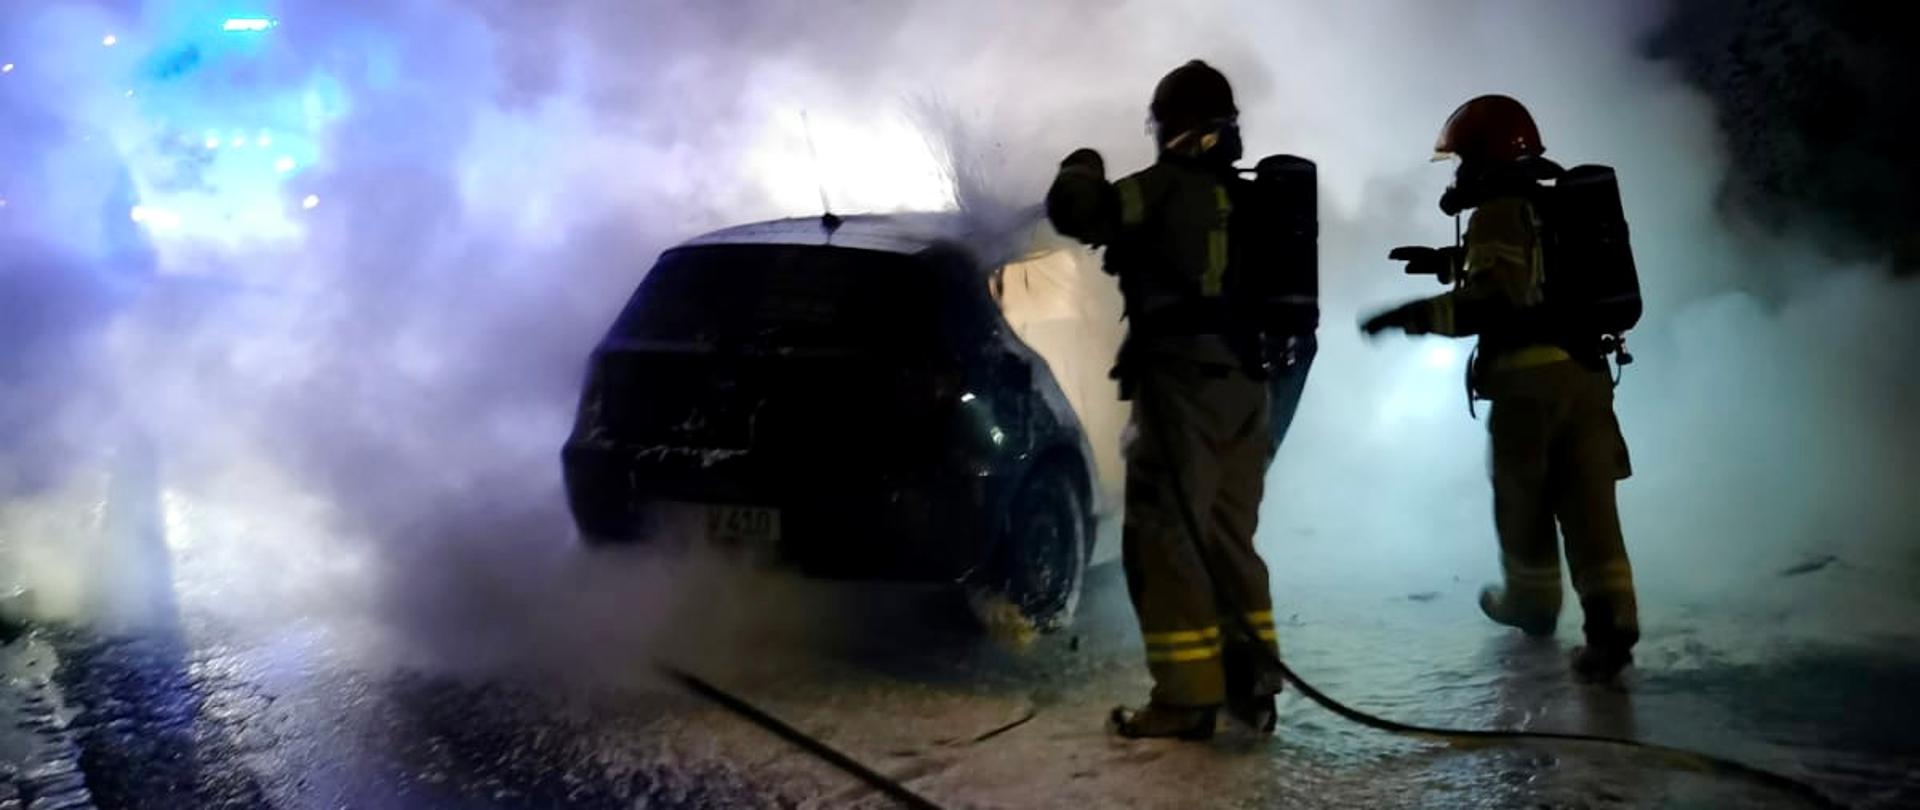 nocna pora, strażacy gaszący palący się samochód w kłębach dymu